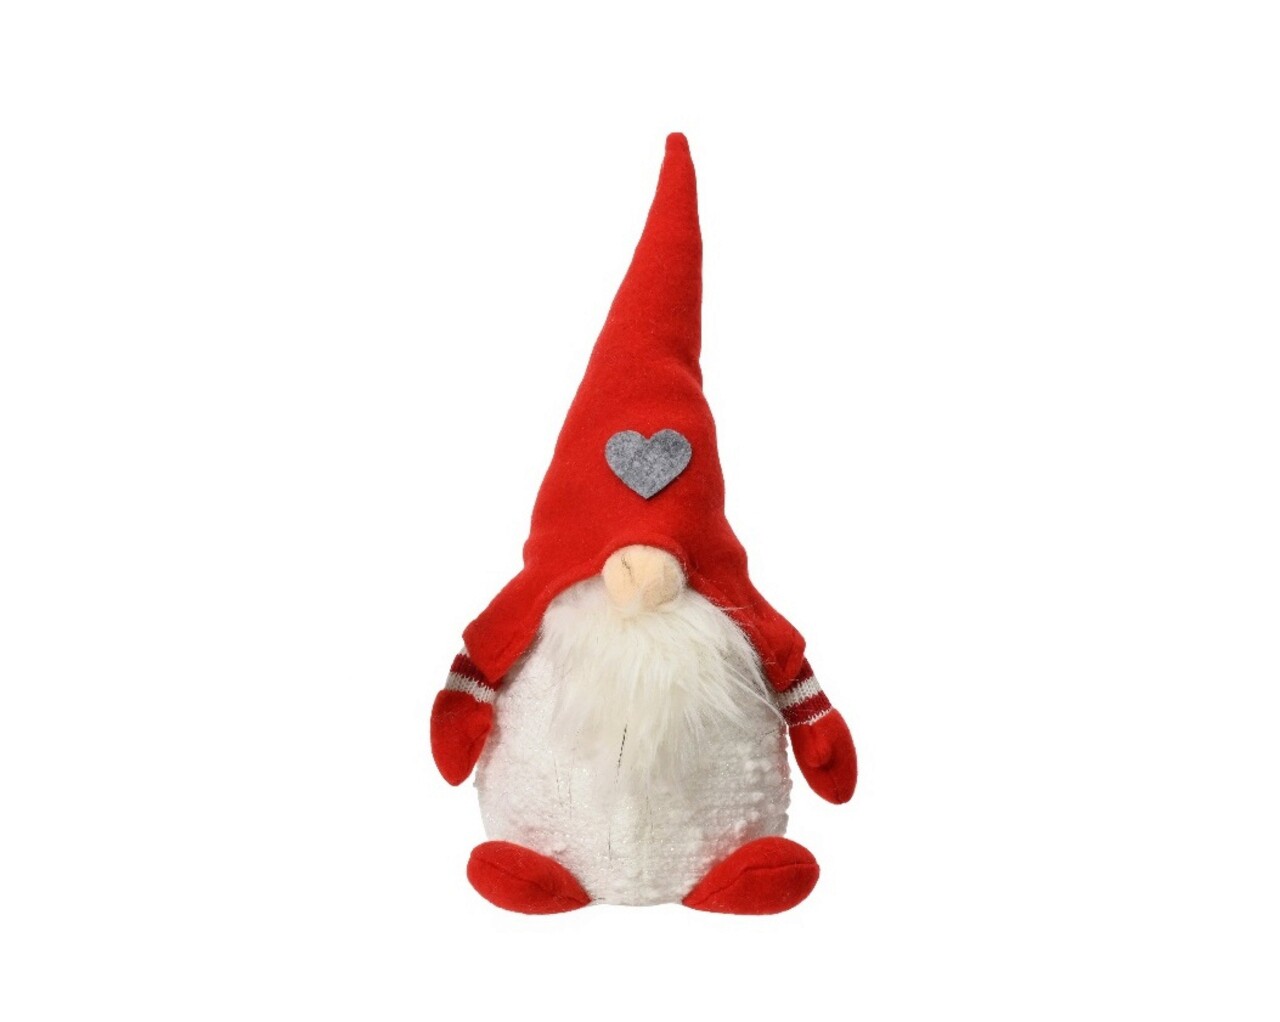 Decoratiune Gnome w red hat w heart, Decoris, 14x12x30 cm, poliester, multicolor